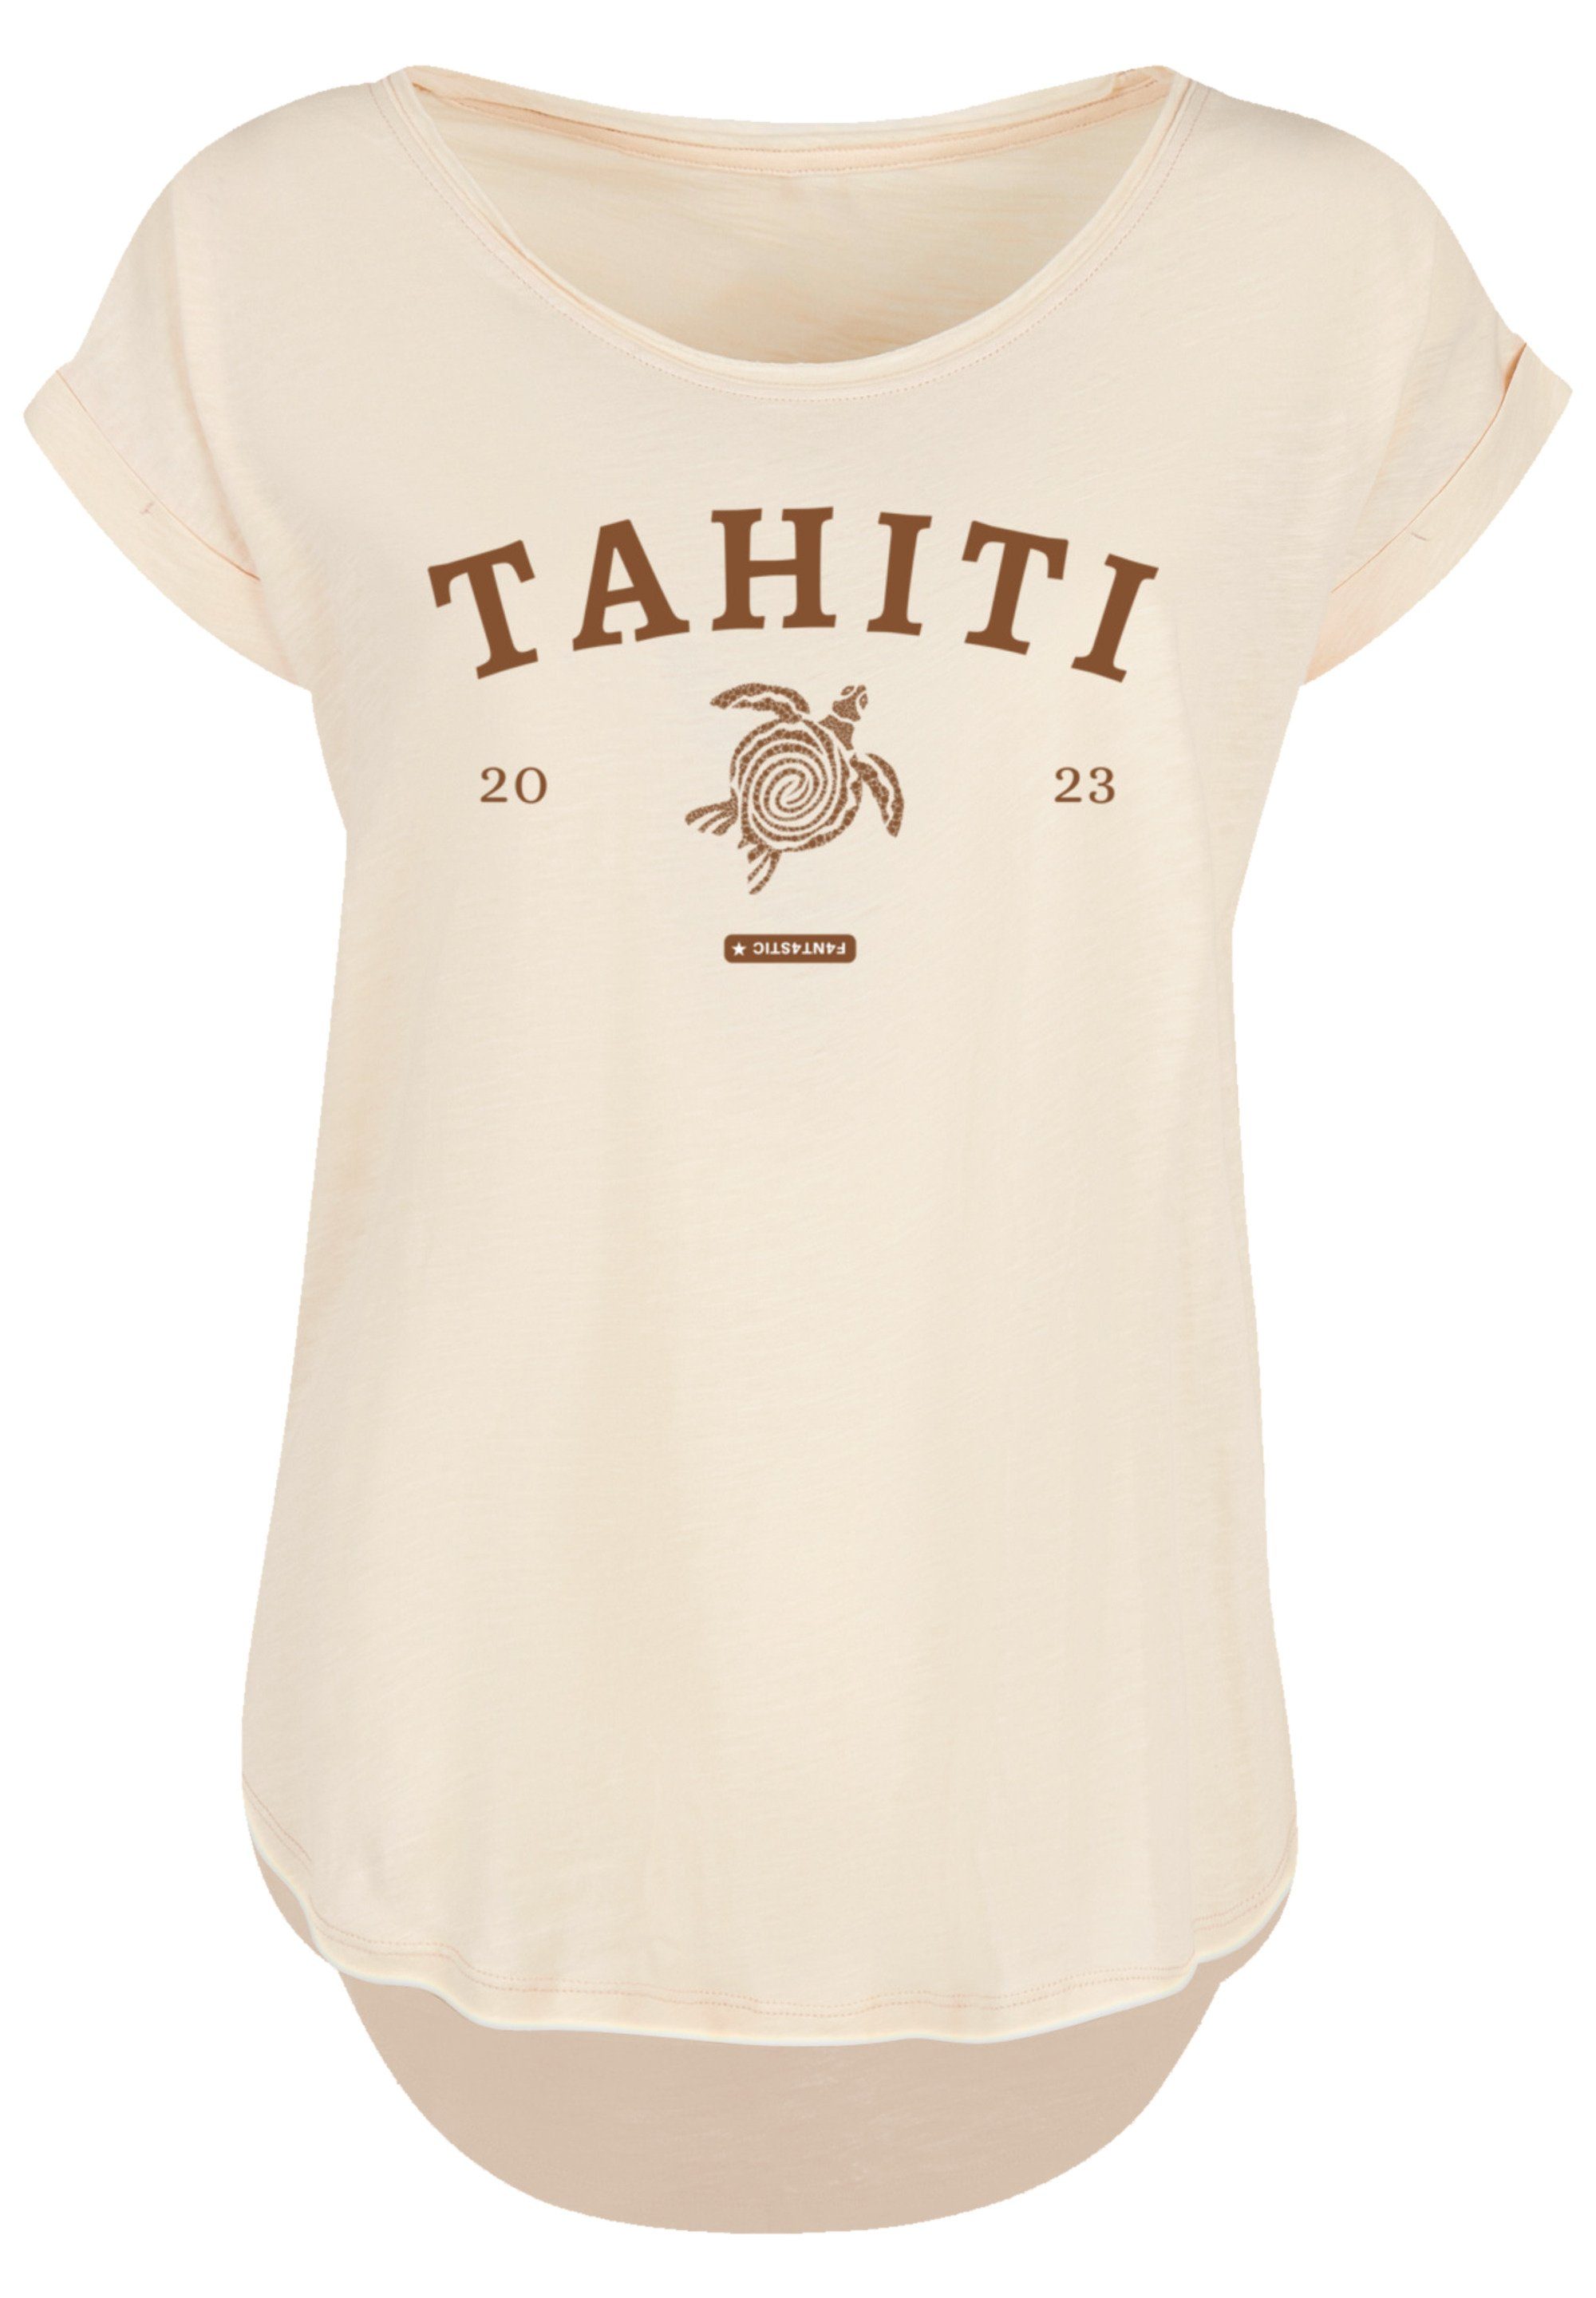 PLUS weicher mit Sehr hohem Tahiti Print, Tragekomfort F4NT4STIC SIZE T-Shirt Baumwollstoff